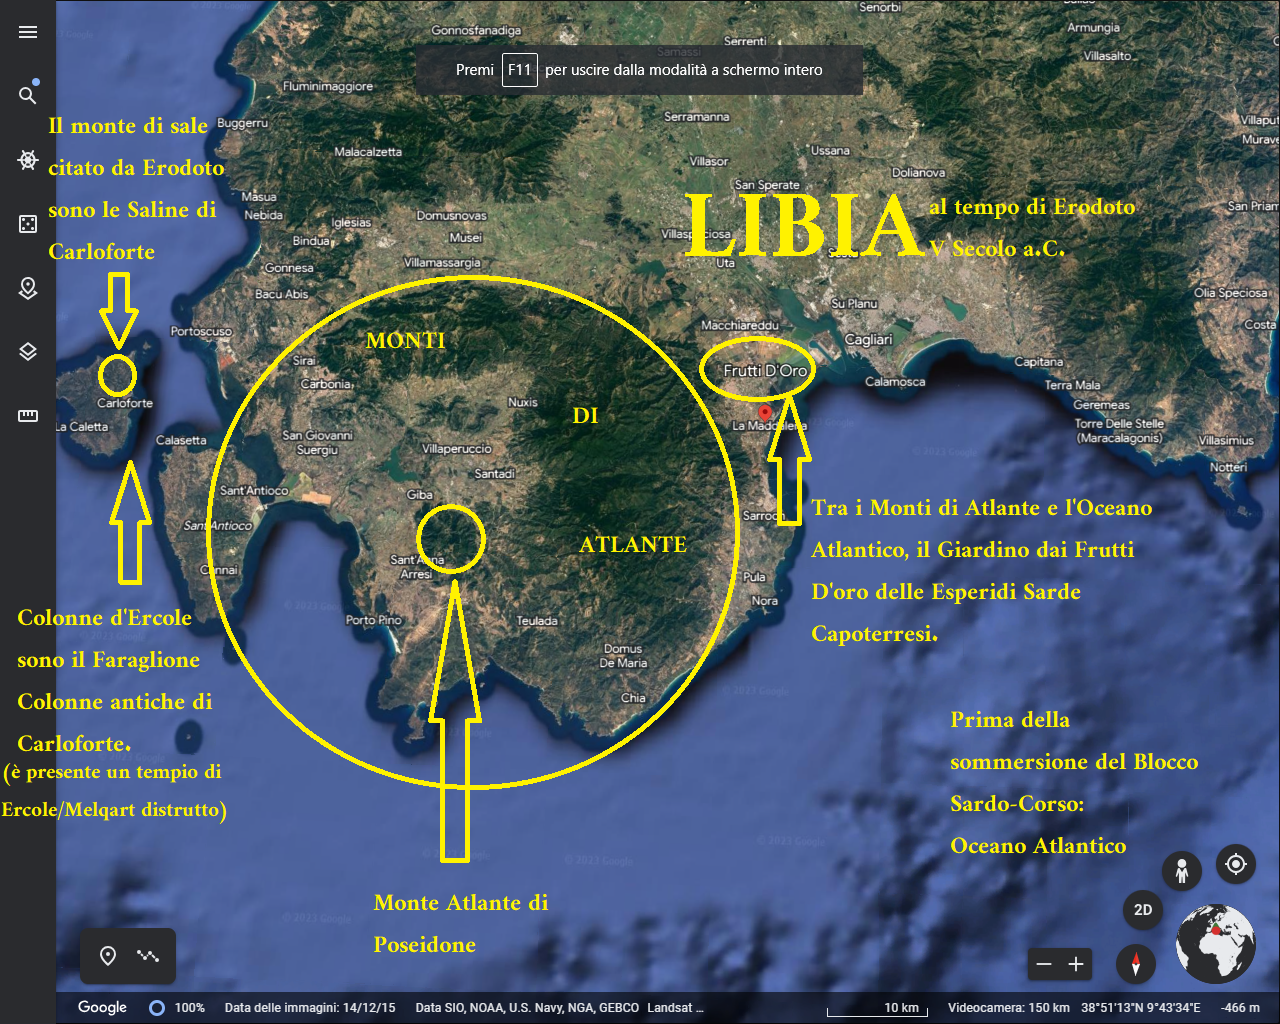 Hasta ahora la cartografía de la Libia herodotea se ha equivocado: Libia es la provincia de Cagliari